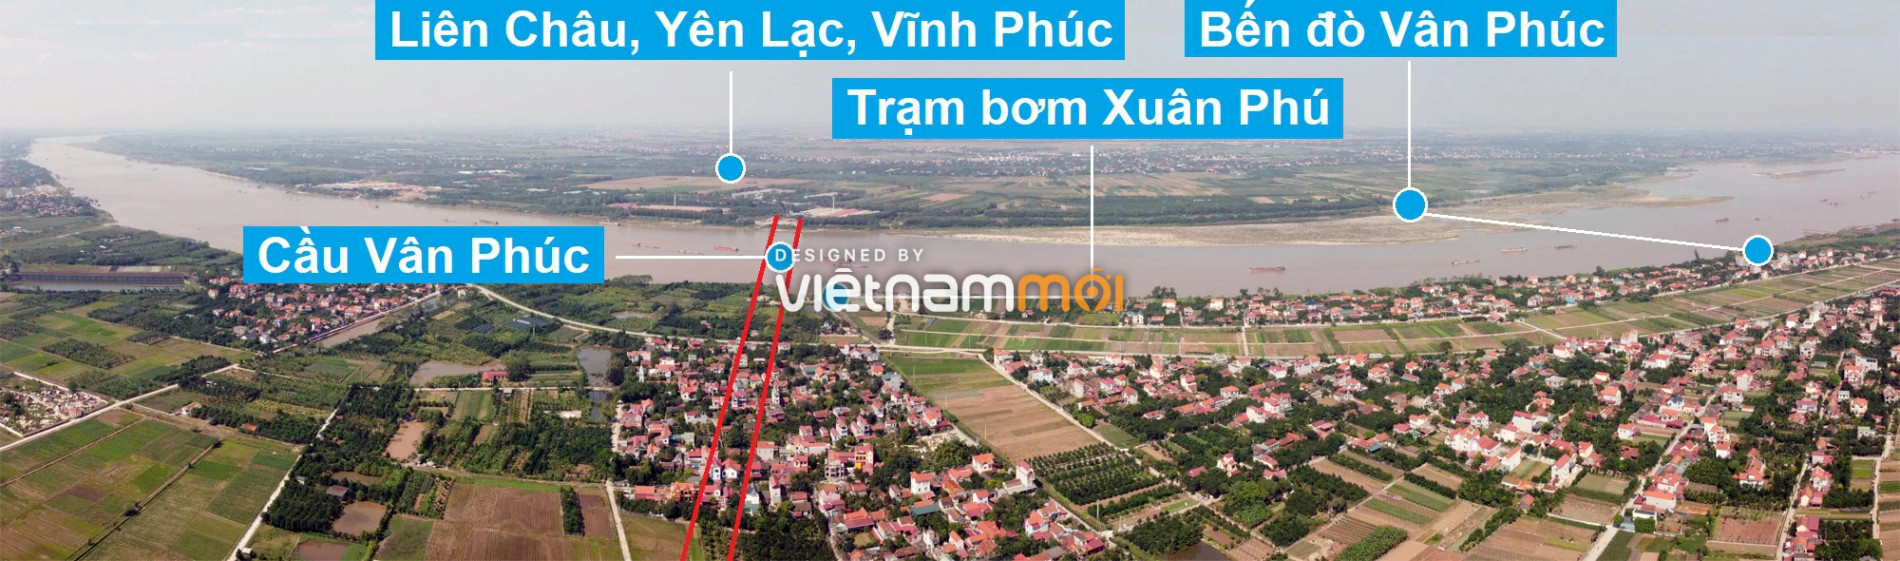 Cầu sẽ mở theo quy hoạch ở Hà Nội: Toàn cảnh cầu Vân Phúc nối Phúc Thọ với Yên Lạc, Vĩnh Phúc - Ảnh 2.